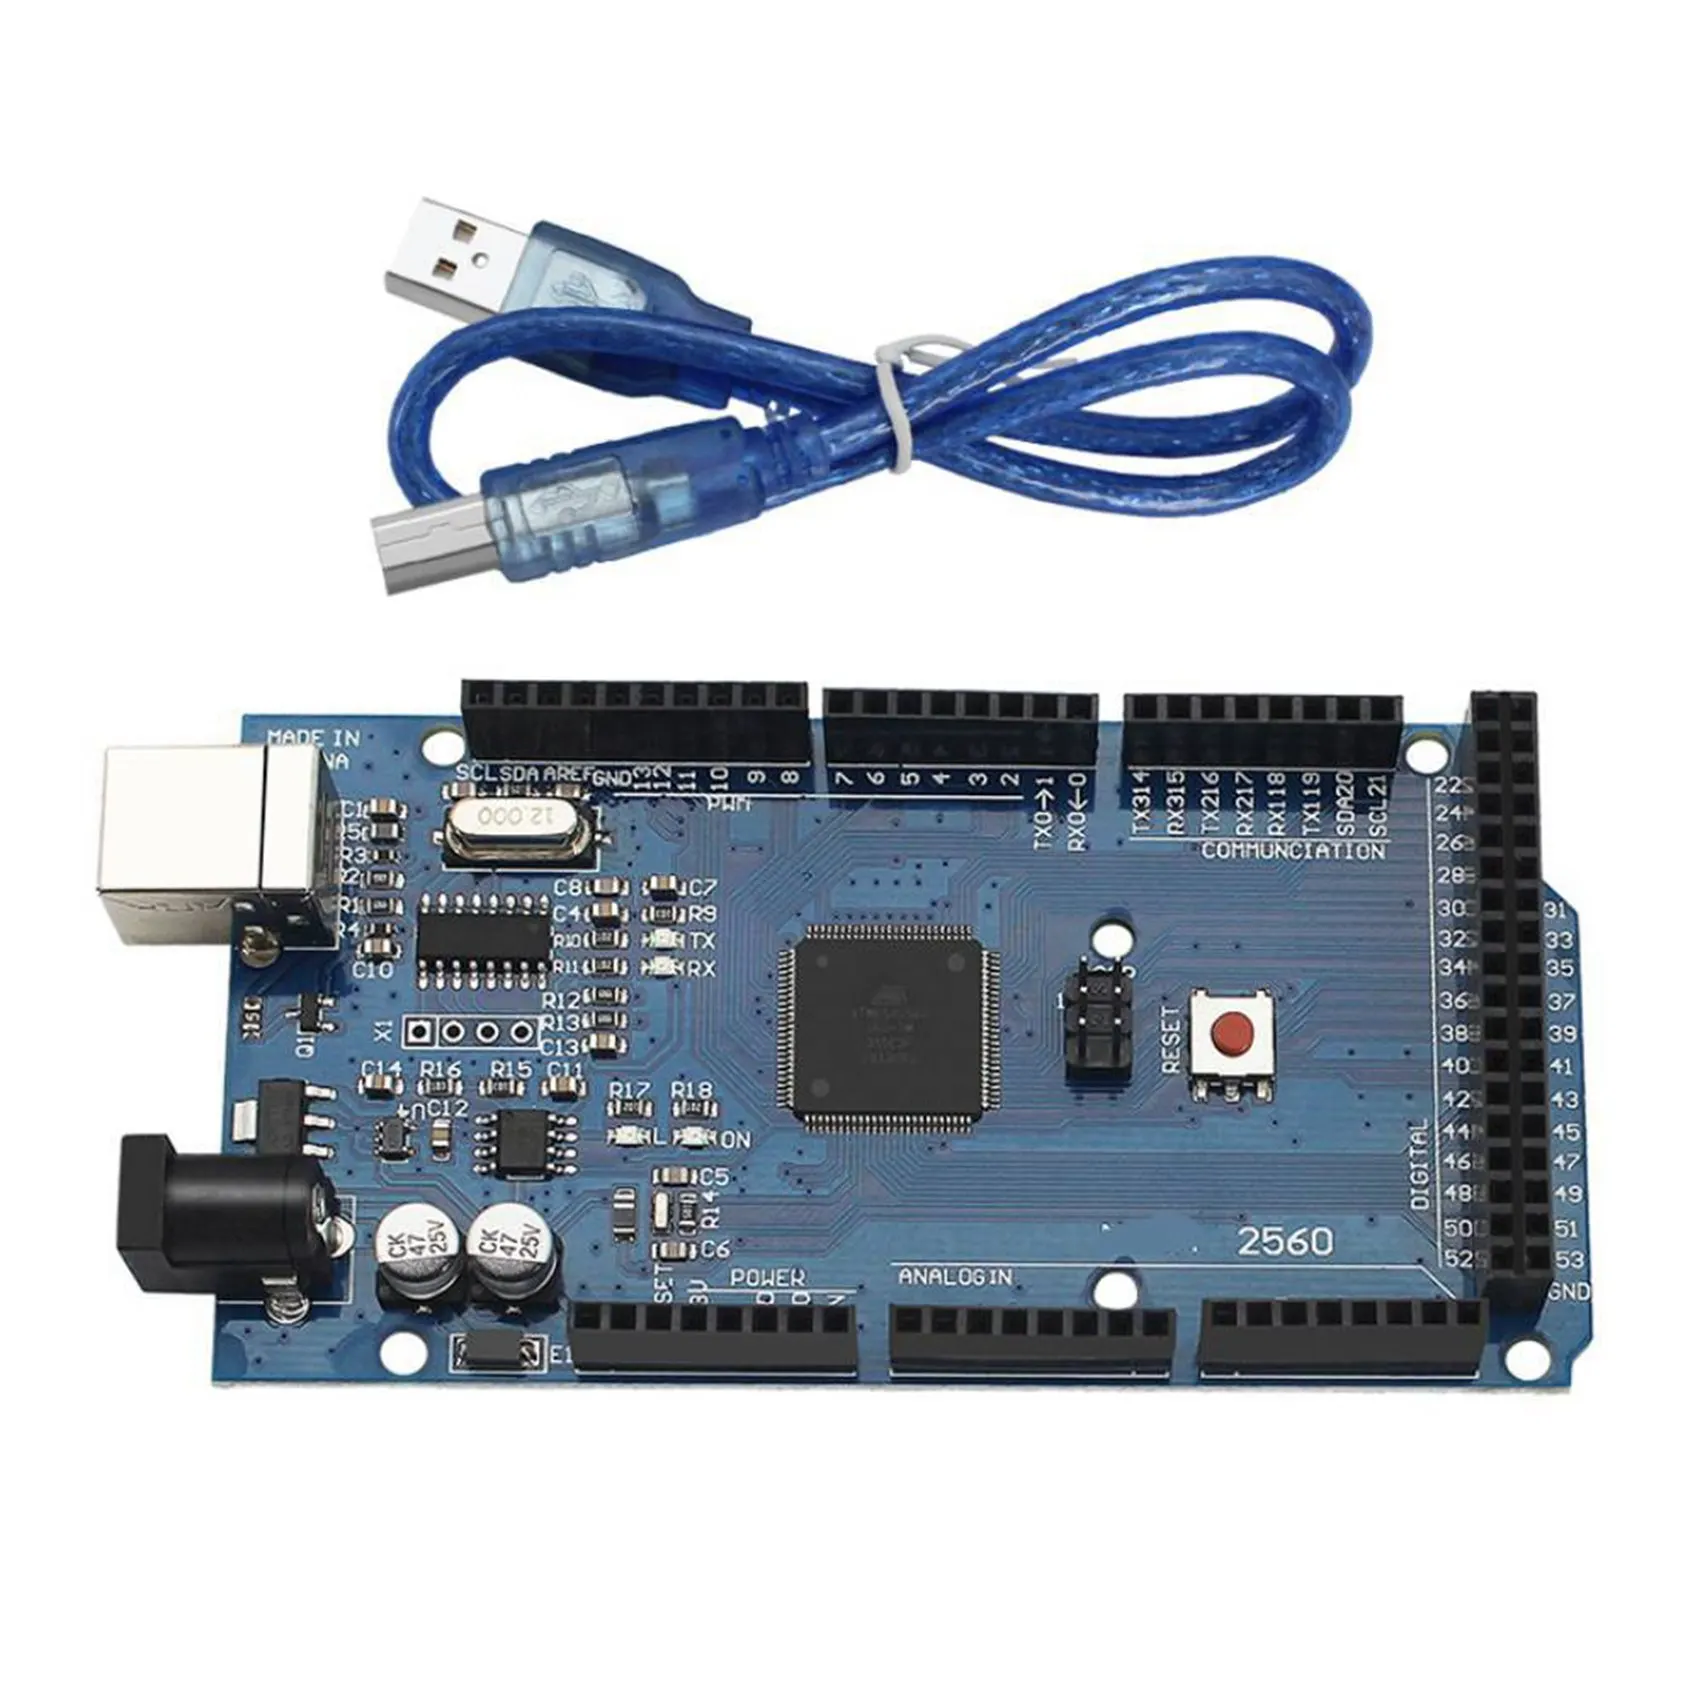 

MEGA2560 R3 Development Board 2560 Development Board CH340G Microcontroller with USB Cable for Arduino UNO R3